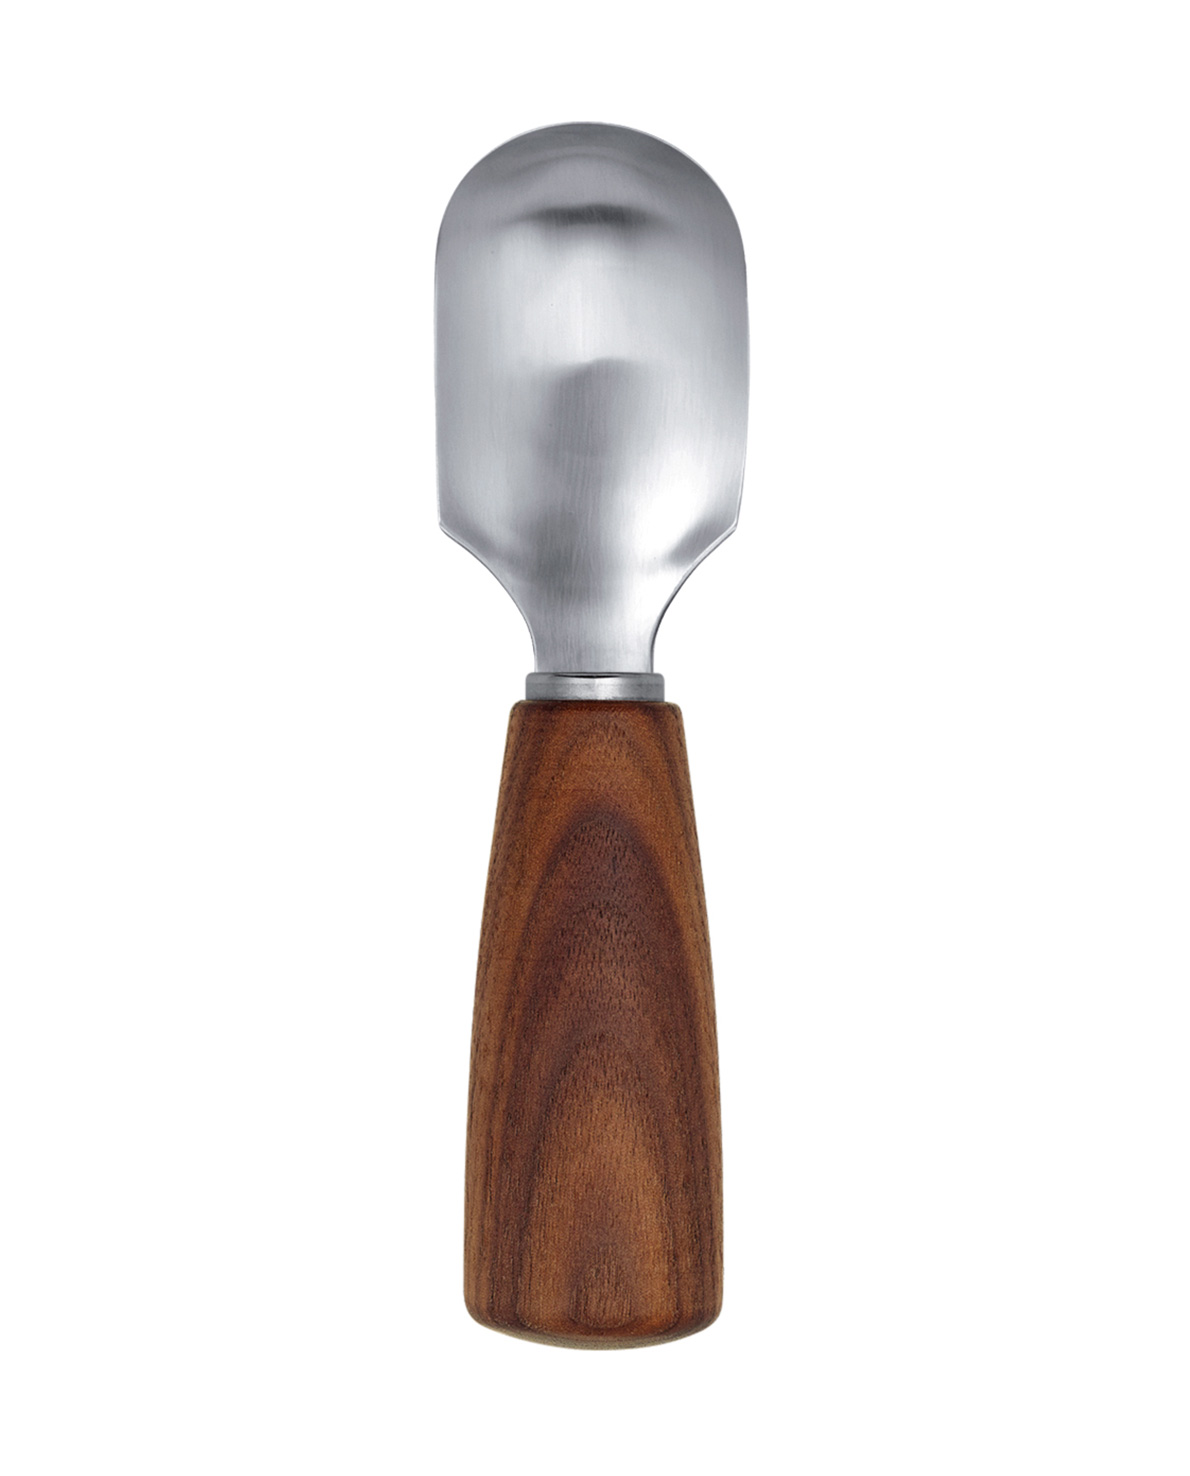 triangle Fruit spoon Soul walnut wood scoop wooden handle